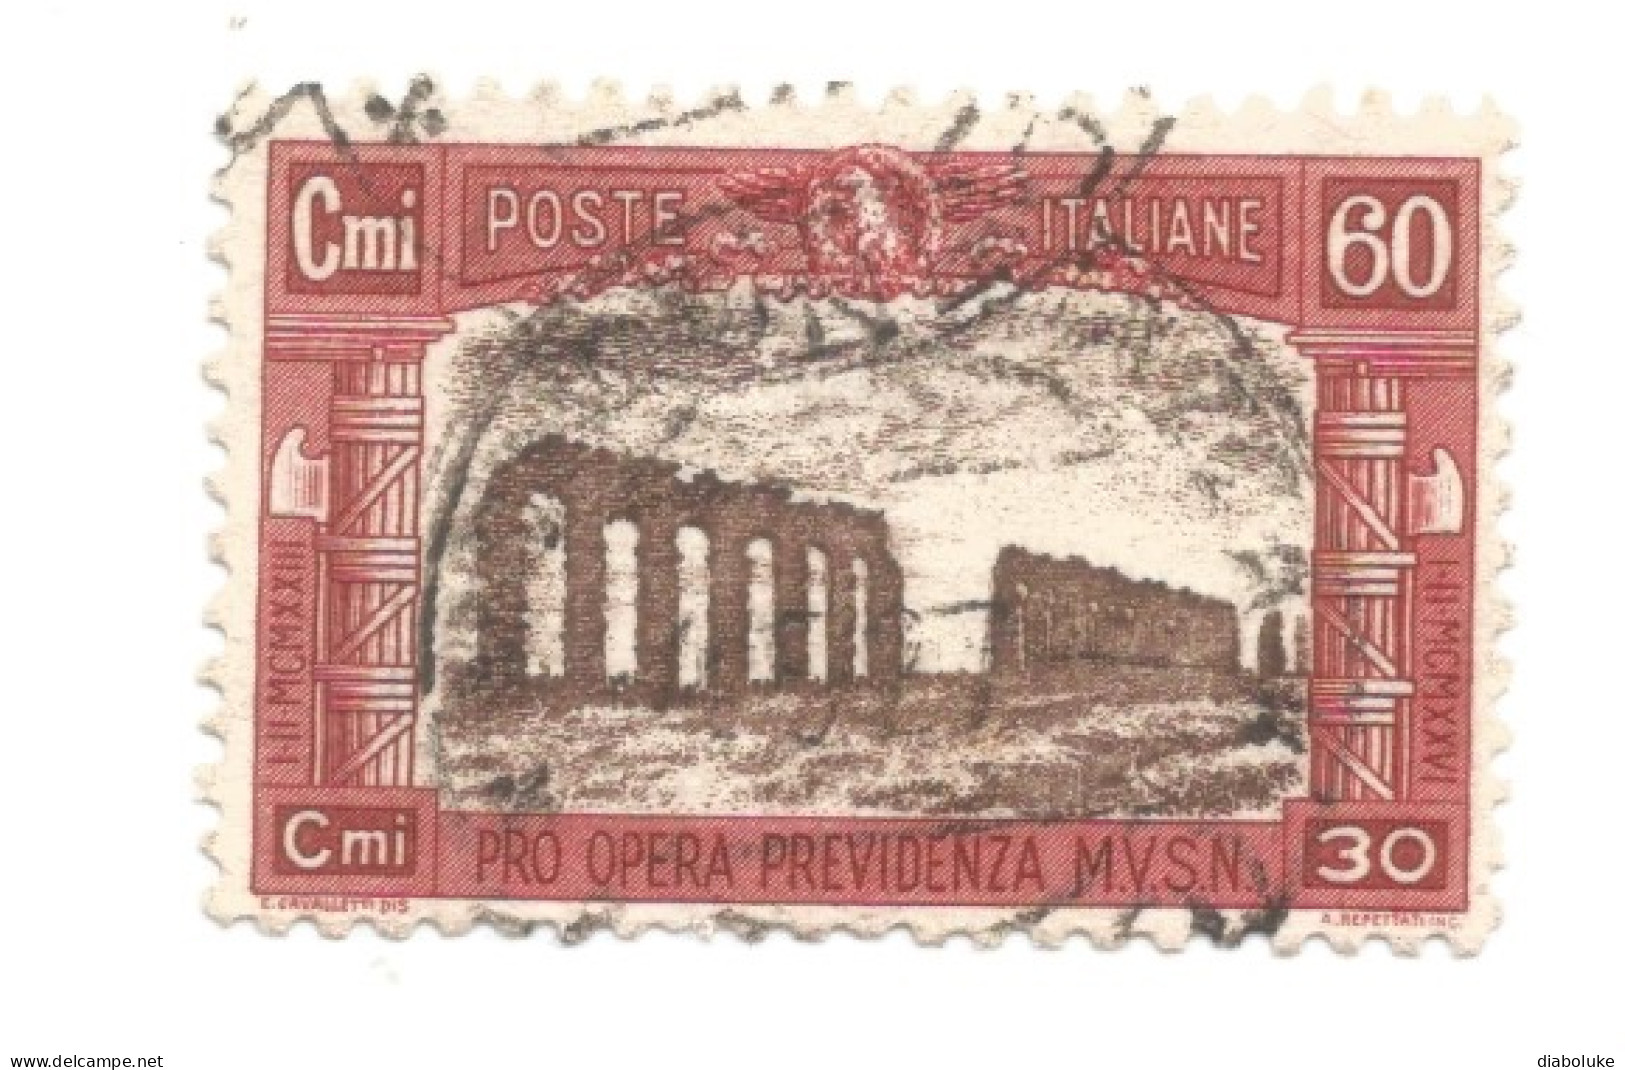 (REGNO D'ITALIA) 1926, PRO OPERA PREVIDENZIA MILIZIA - Serie Di 4 Francobolli Usati, Annulli Da Periziare - Posta Aerea